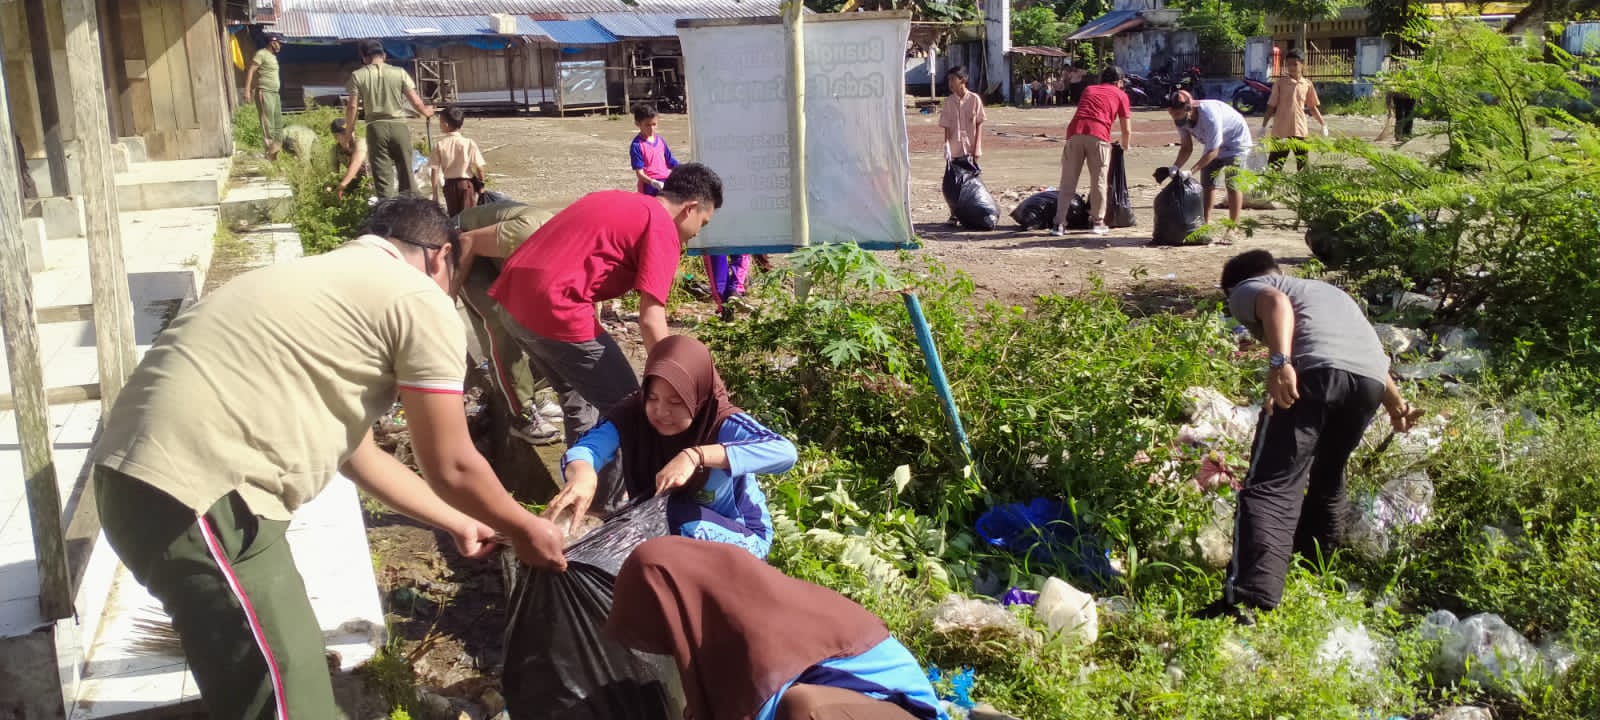 Pemuda Pancasila Sinjai Selatan Bersihkan Sampah di Pasar Samaenre